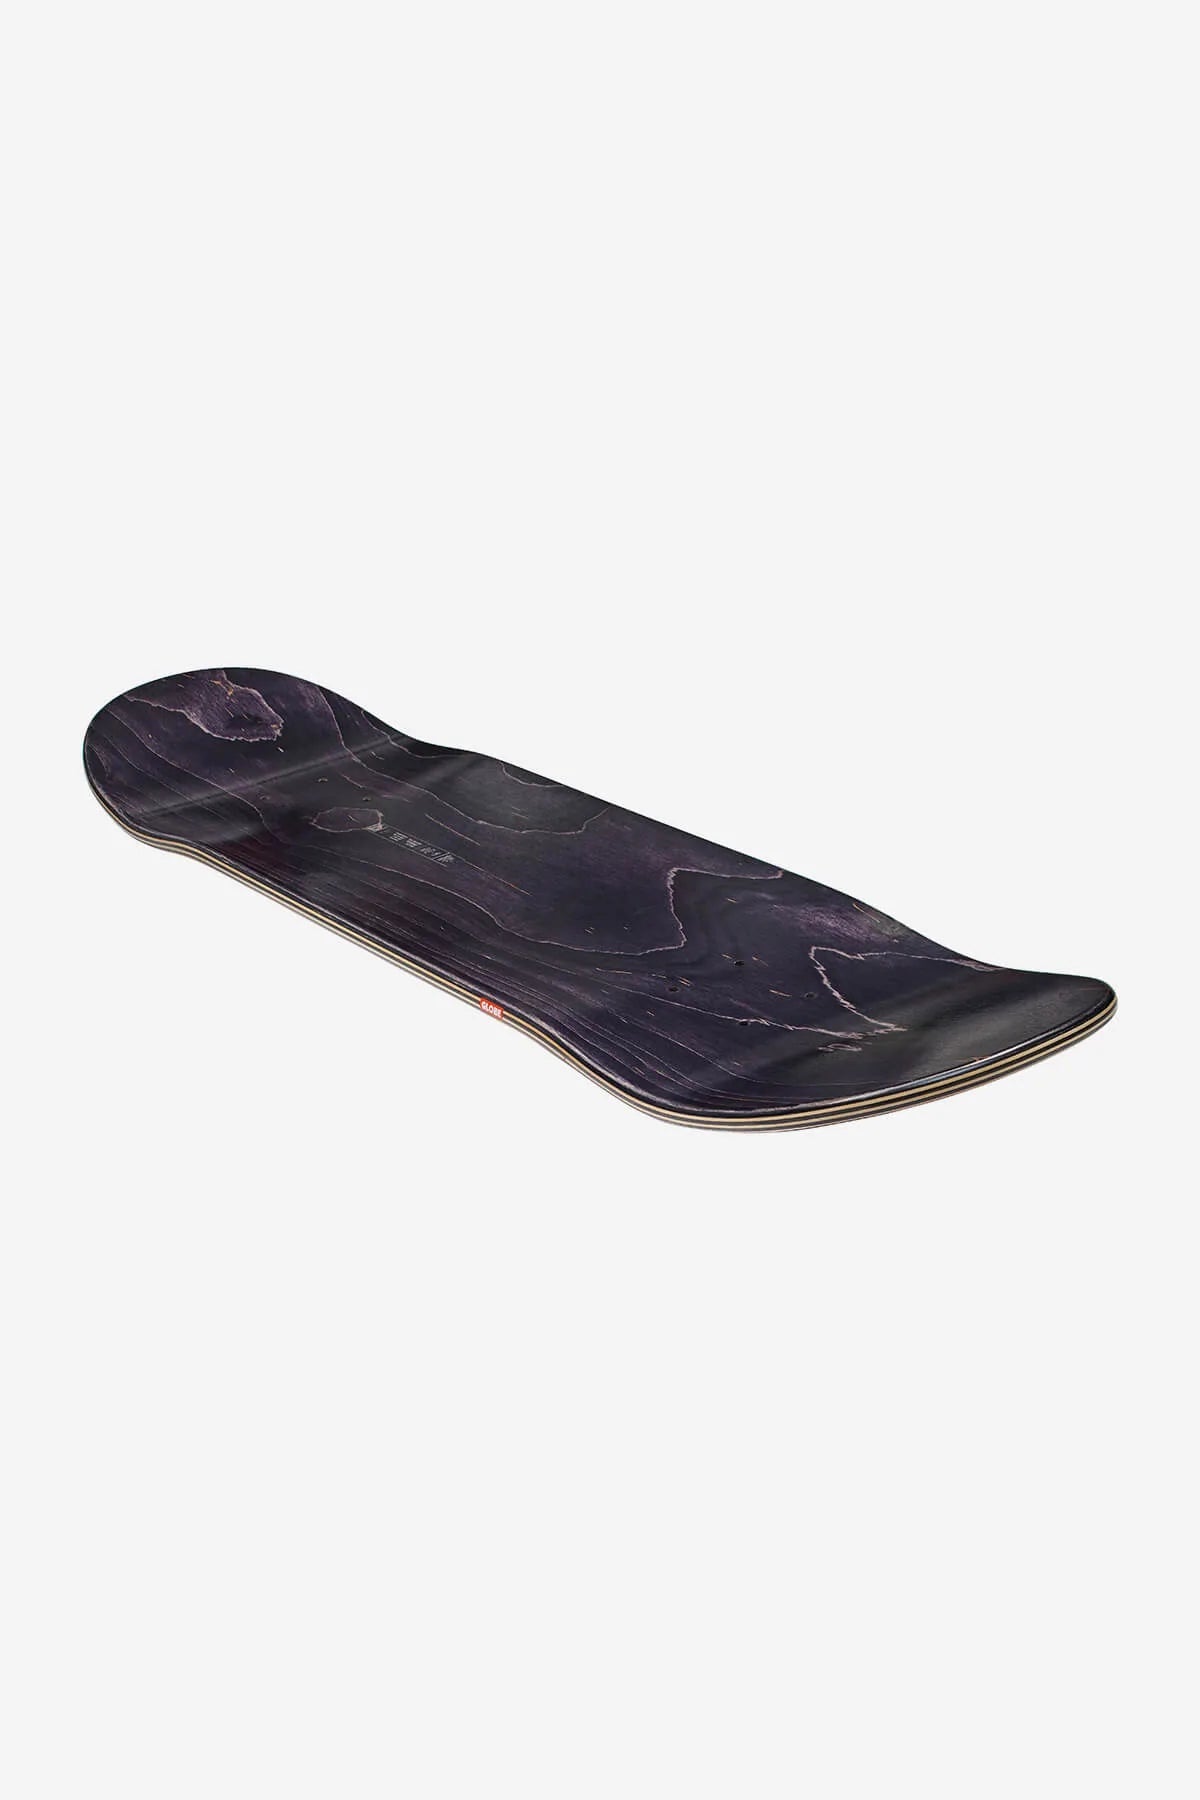 Globe G2 Ramones Skateboard Deck 7,75" Ramones | Meistverkaufte Produkte | Neue Produkte | Neueste Produkte | surfdevils.com